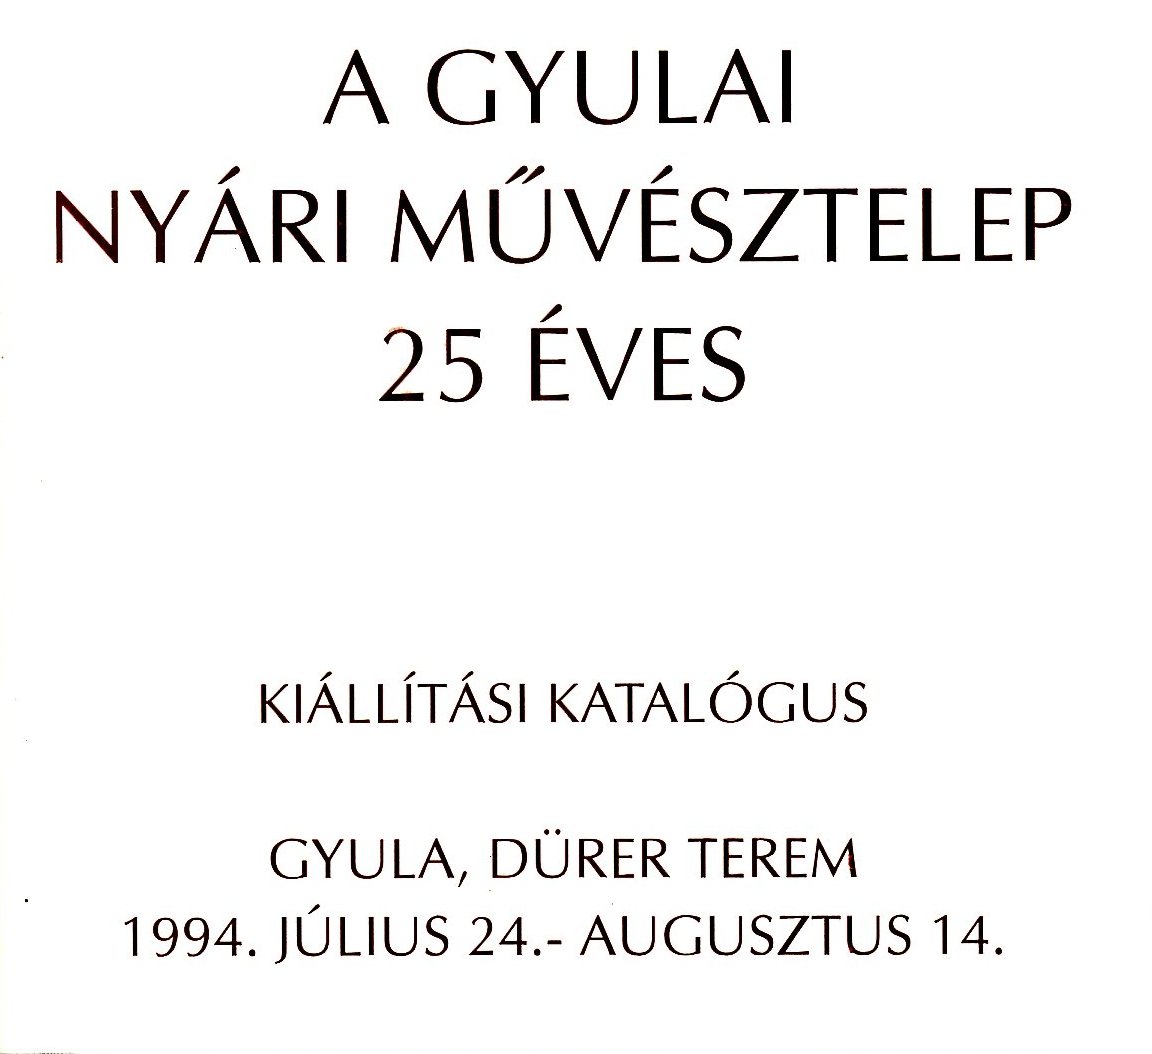 Katalógus a Gyulai Nyári Művésztelep 25 éves kiállításáról (Erkel Ferenc Múzeum CC BY-NC-SA)